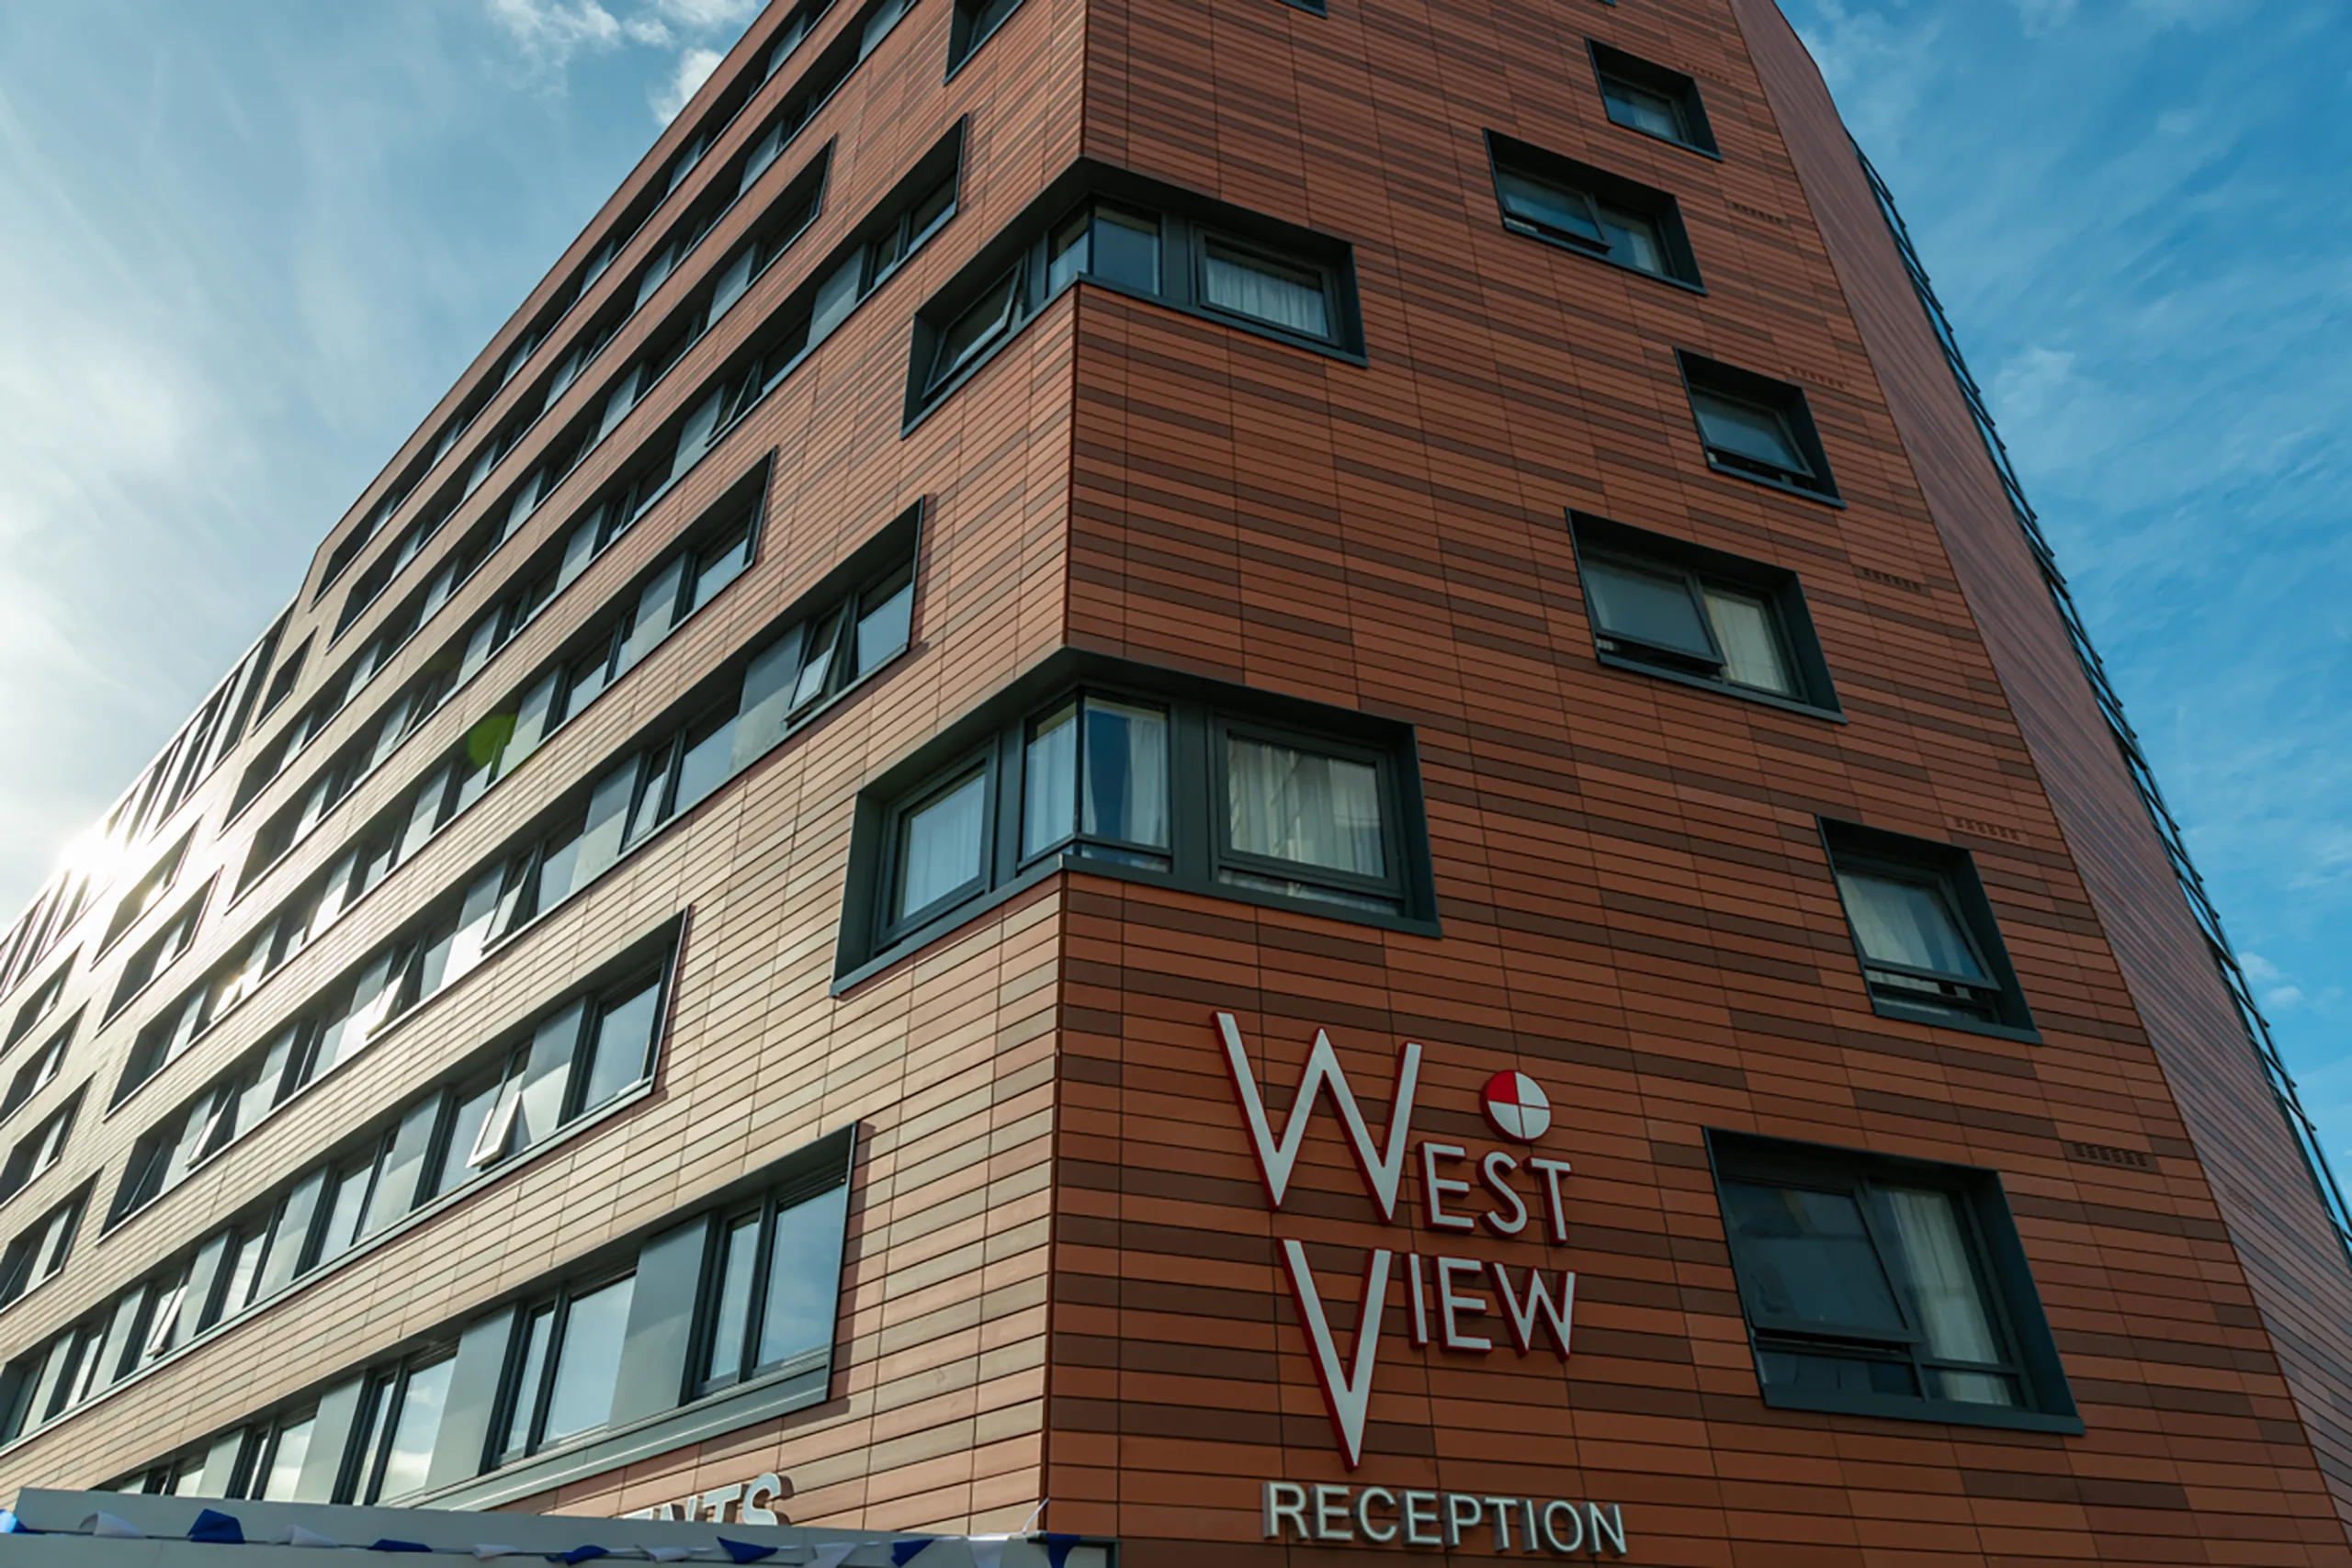 West View Reception, Glasgow